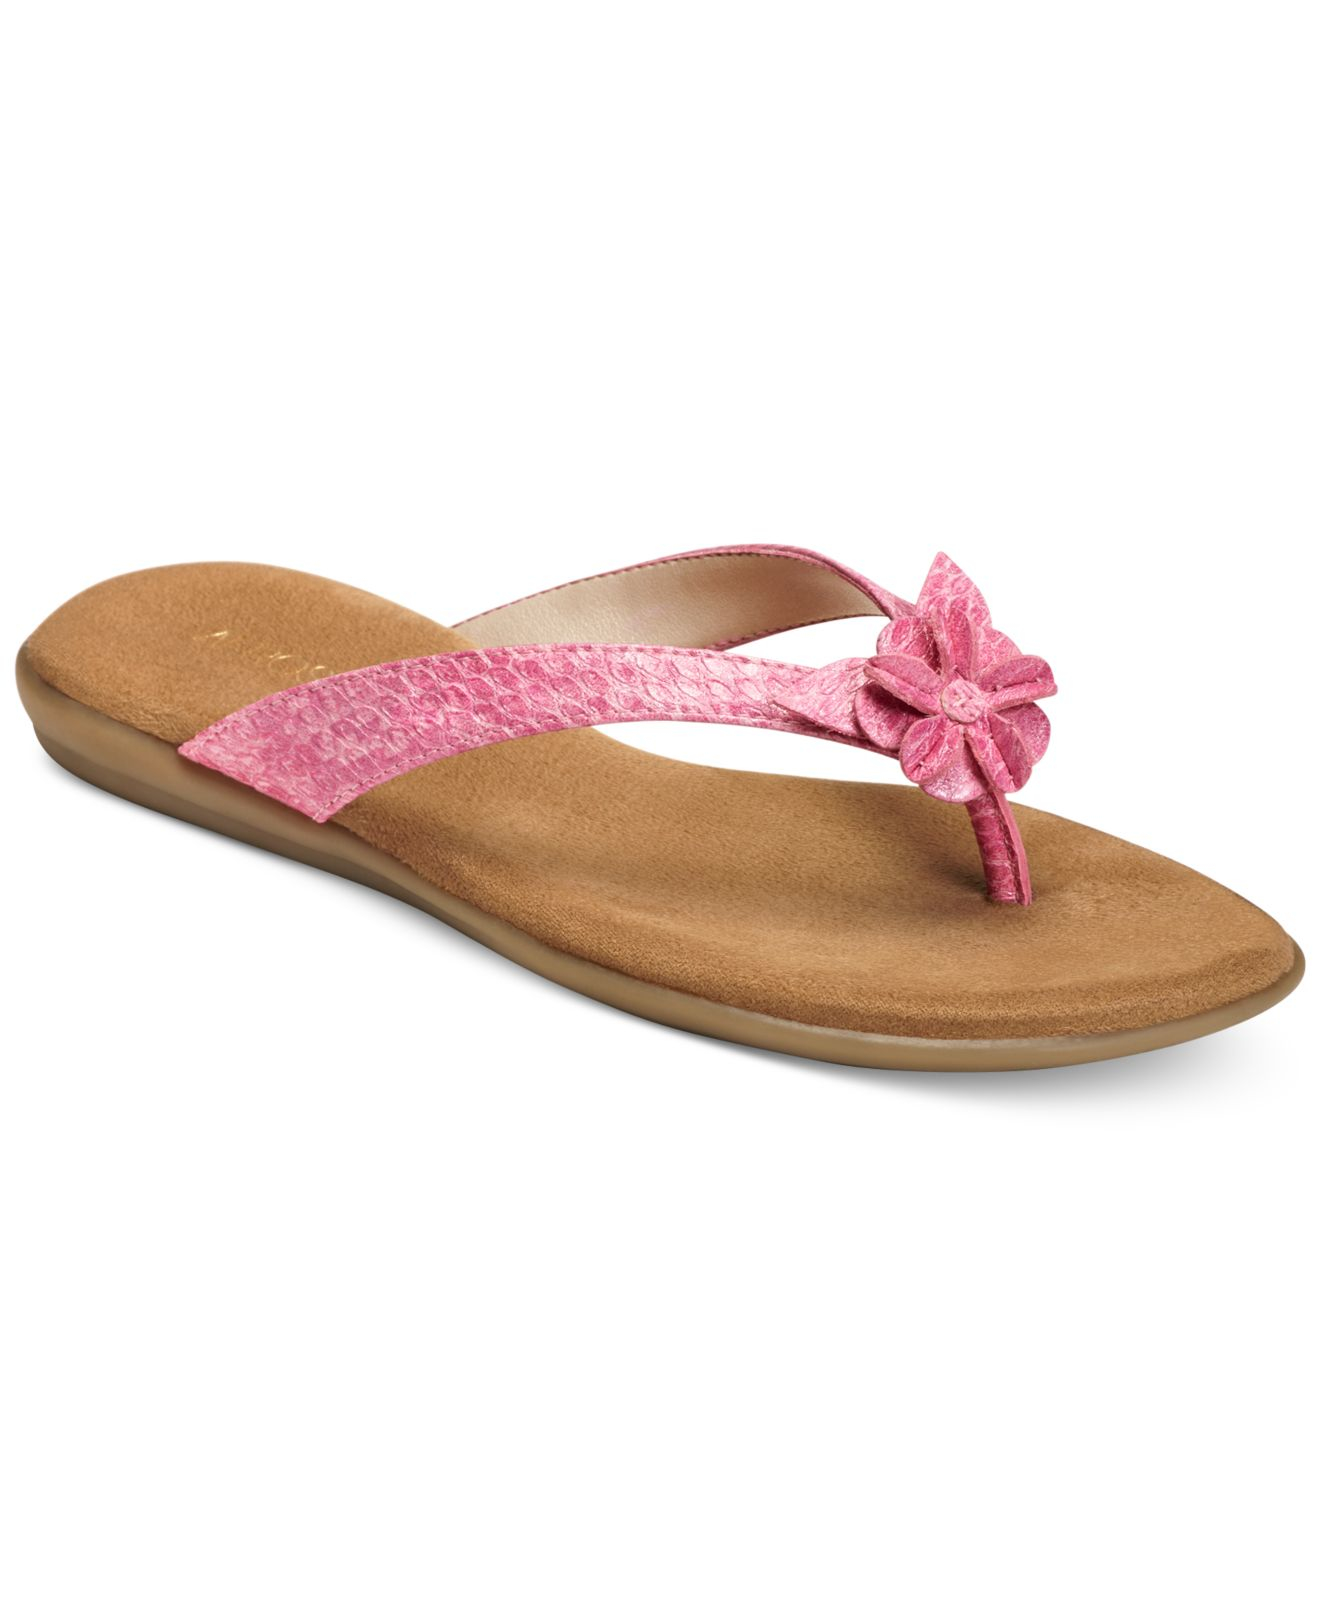 Aerosoles Branchlet Flip Flop Sandals in Pink (Pink Snake) - Save 19% ...